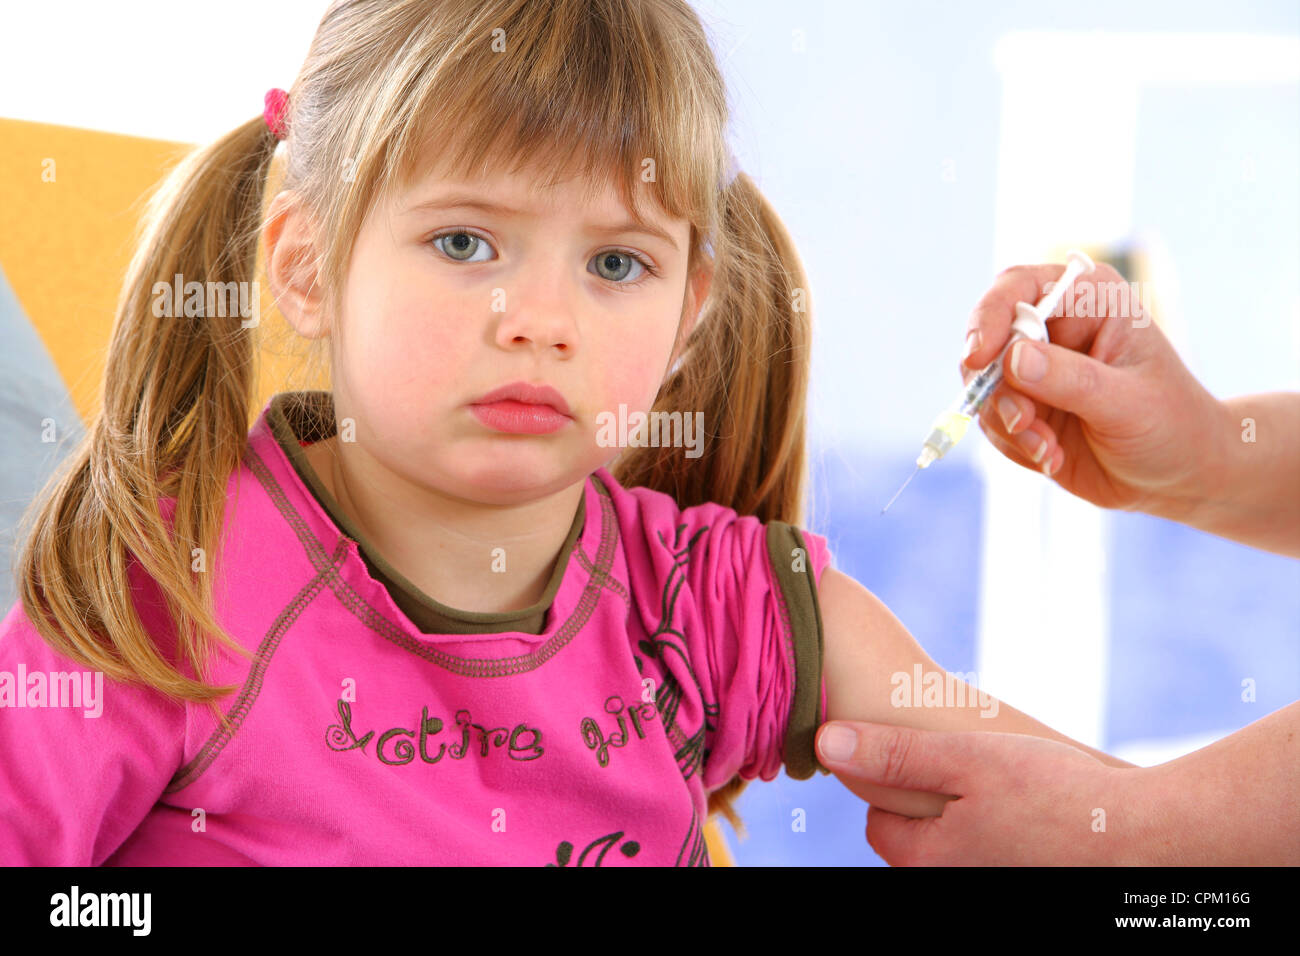 La vaccinazione di un bambino Foto Stock